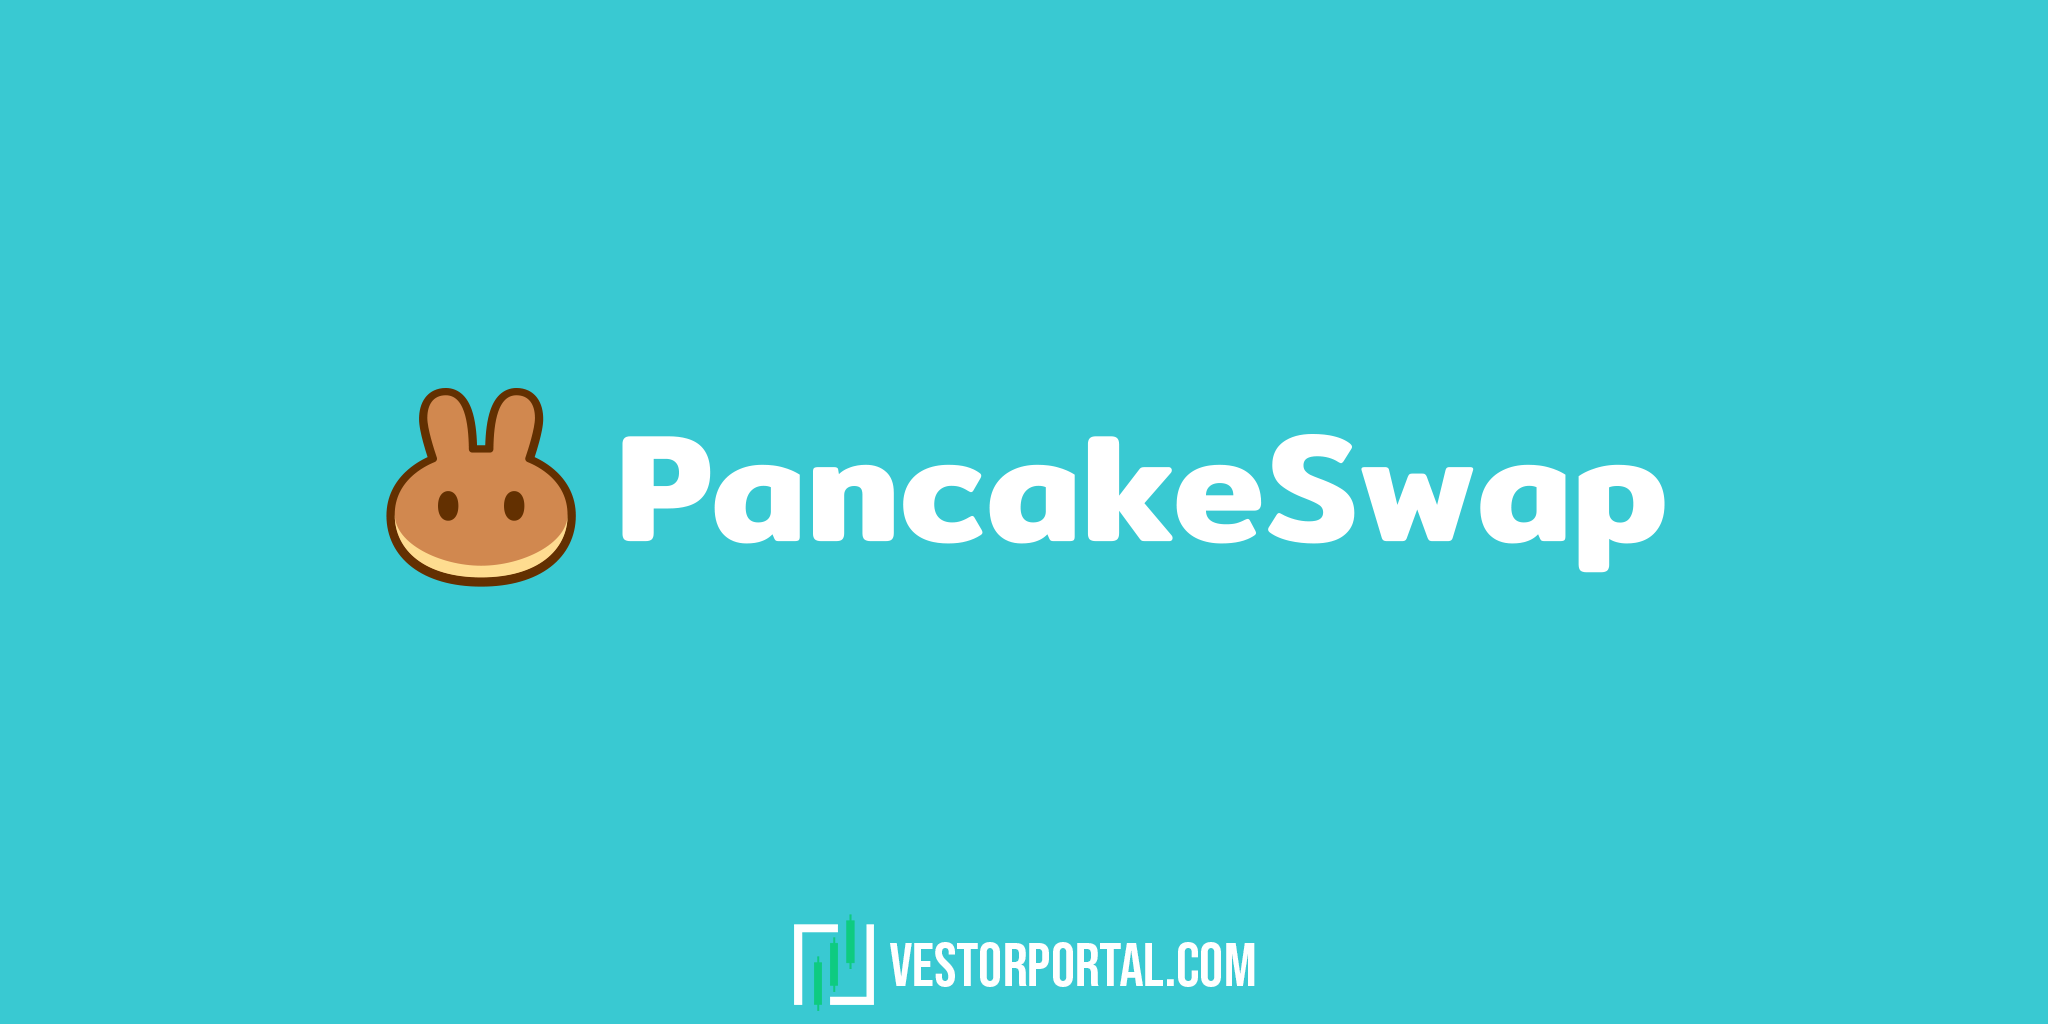 How to use PancakeSwap?